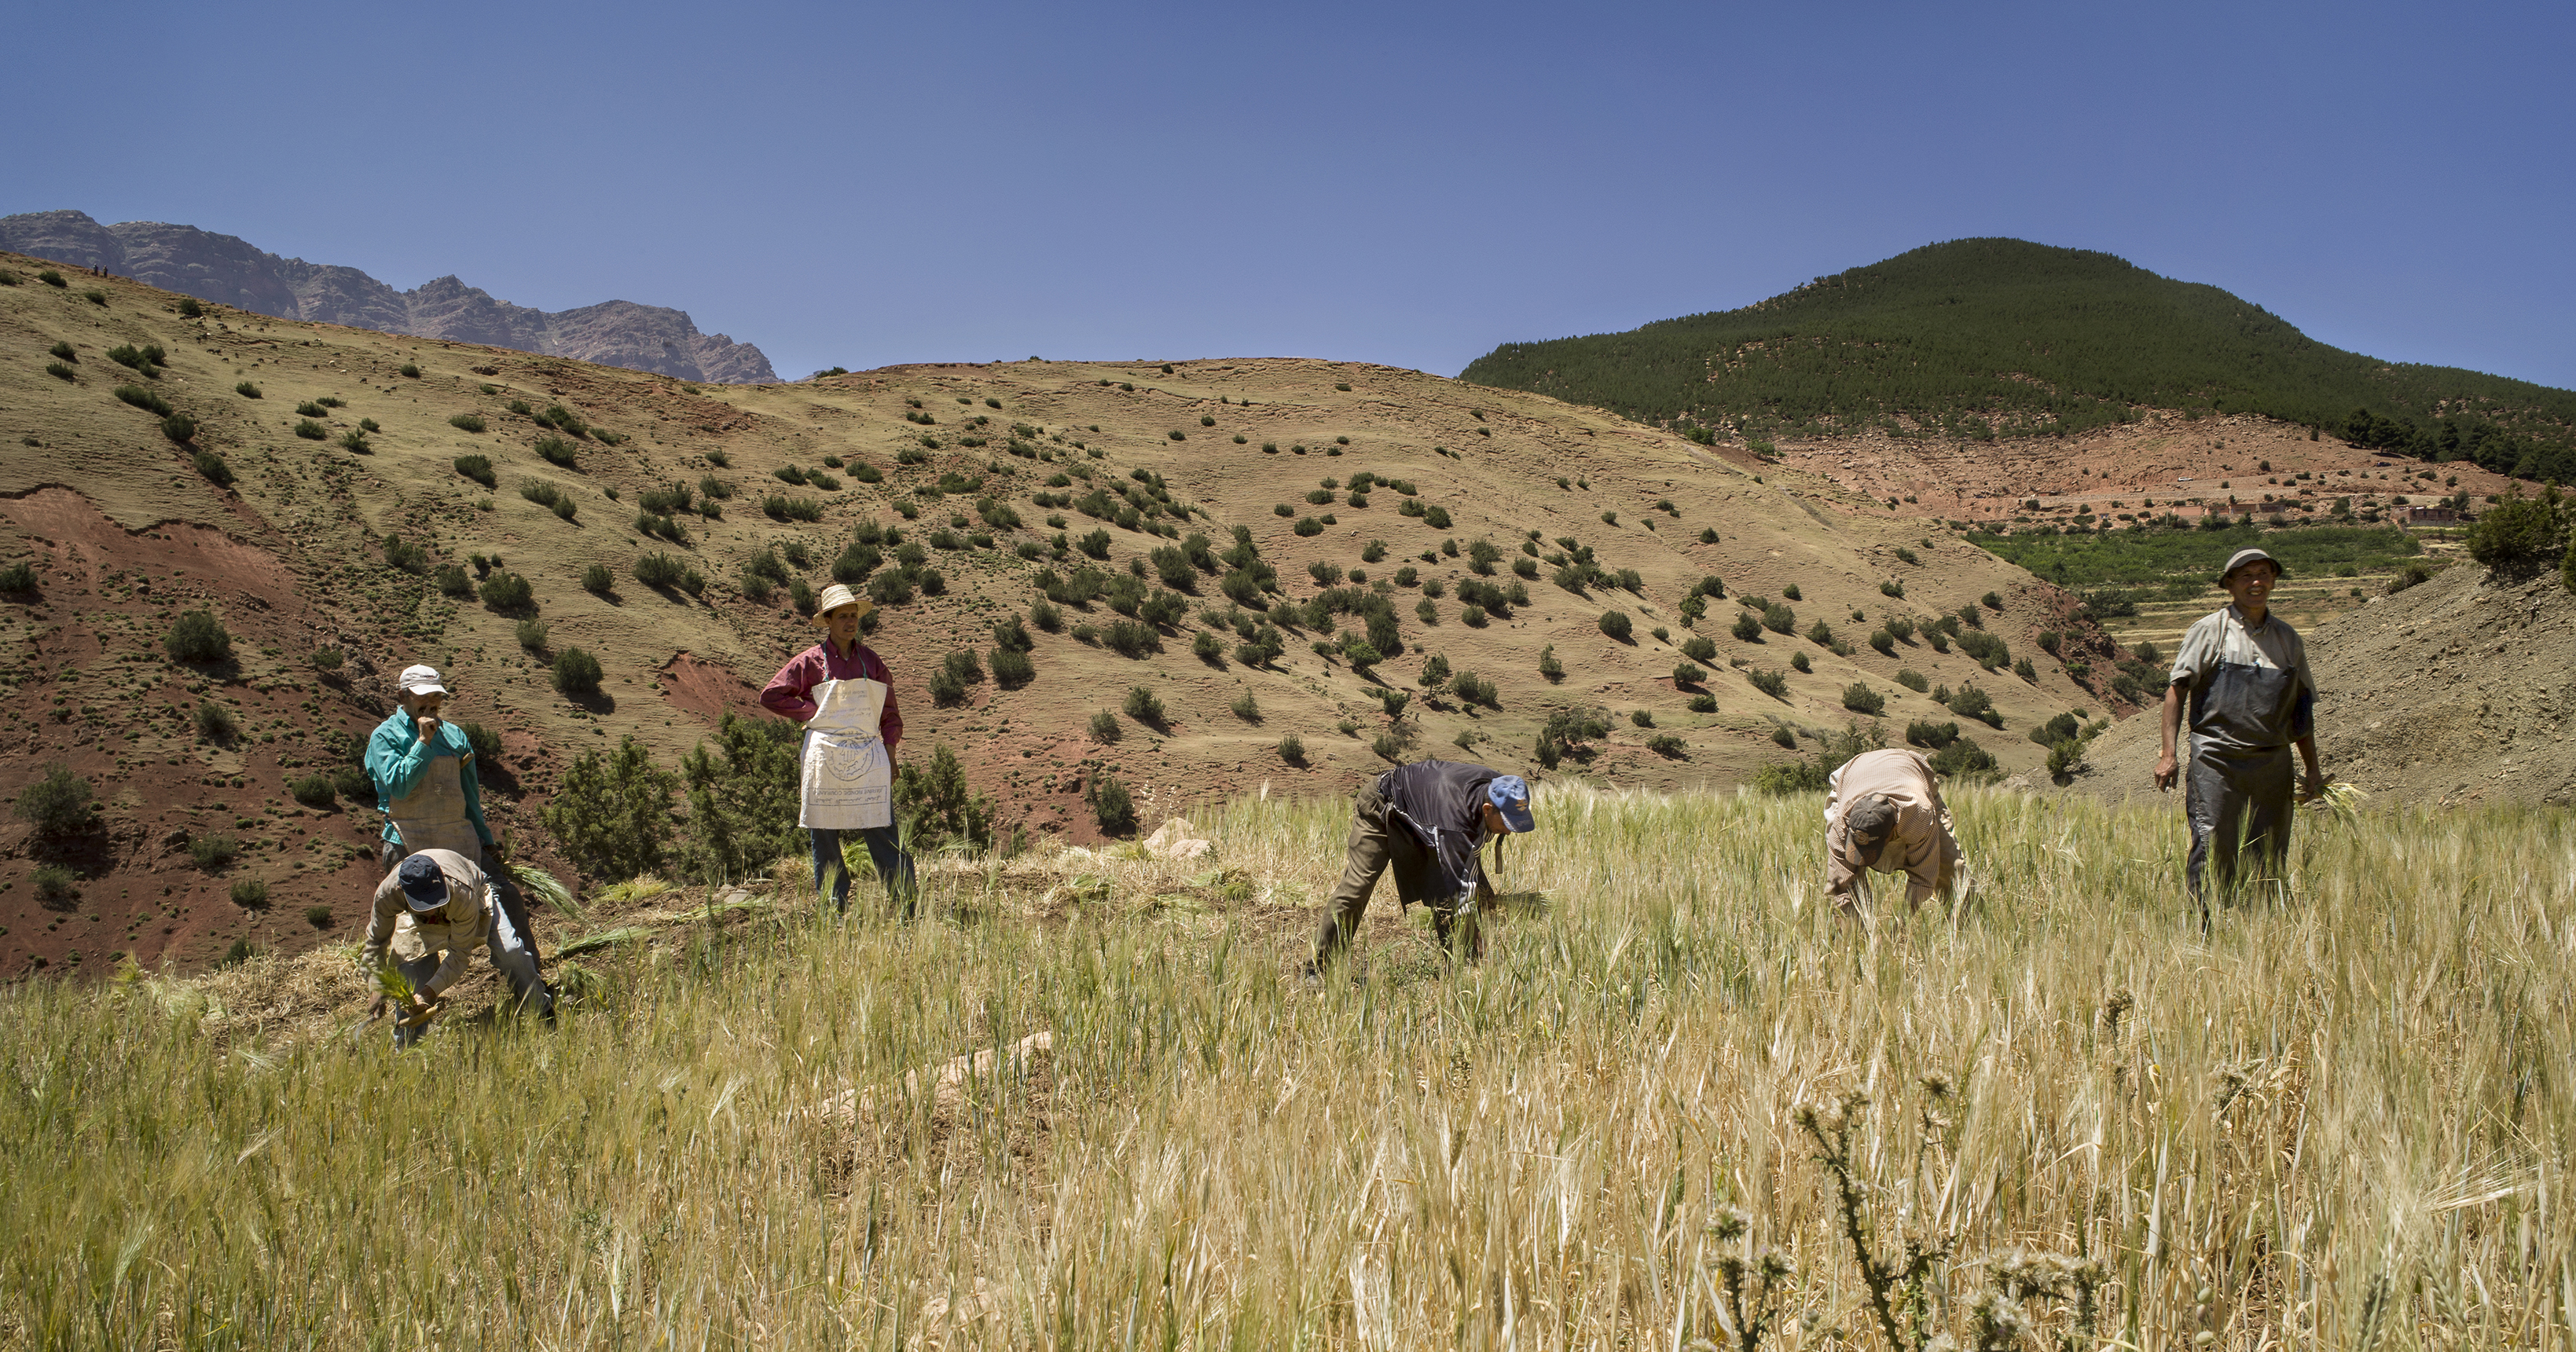 Ouvriers agricoles récoltant un champ dans la vallée de l'Ourika.